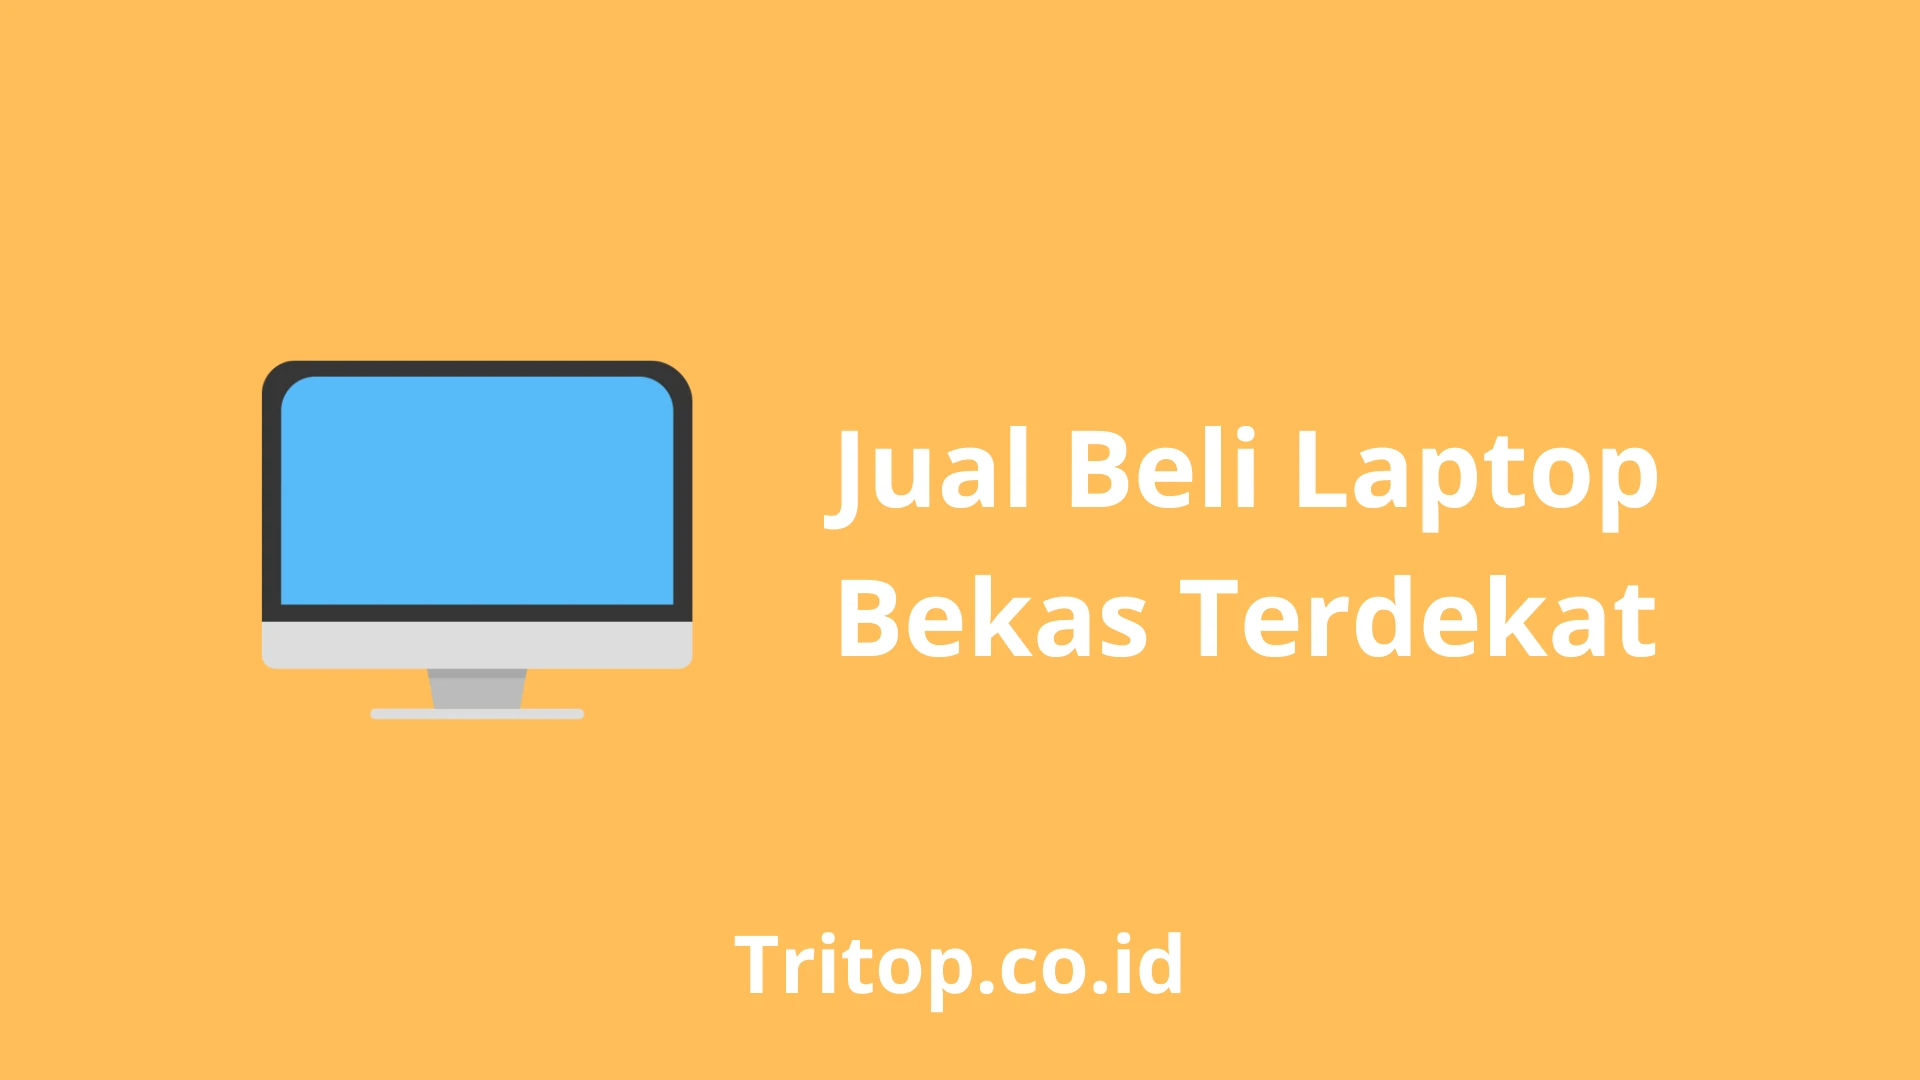 Jual Beli Laptop Bekas Terdekat Tritop.co.id